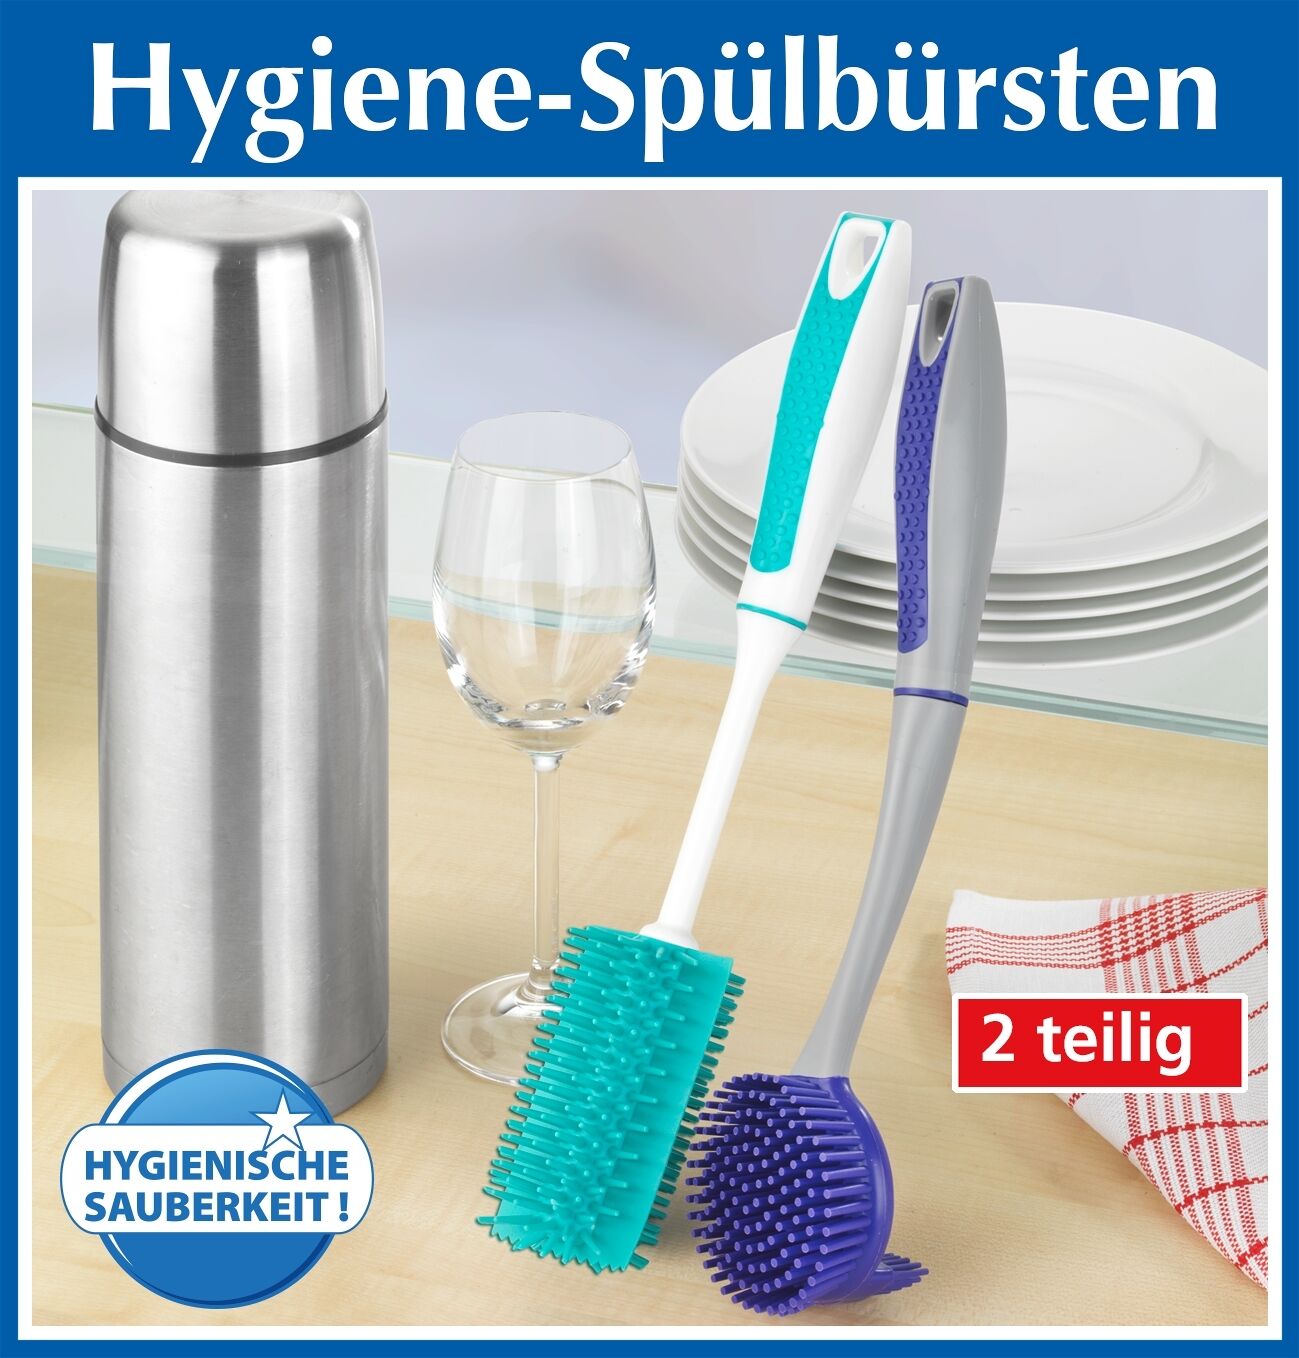 Hygiene-Spülbürsten, 2 teiliges Set